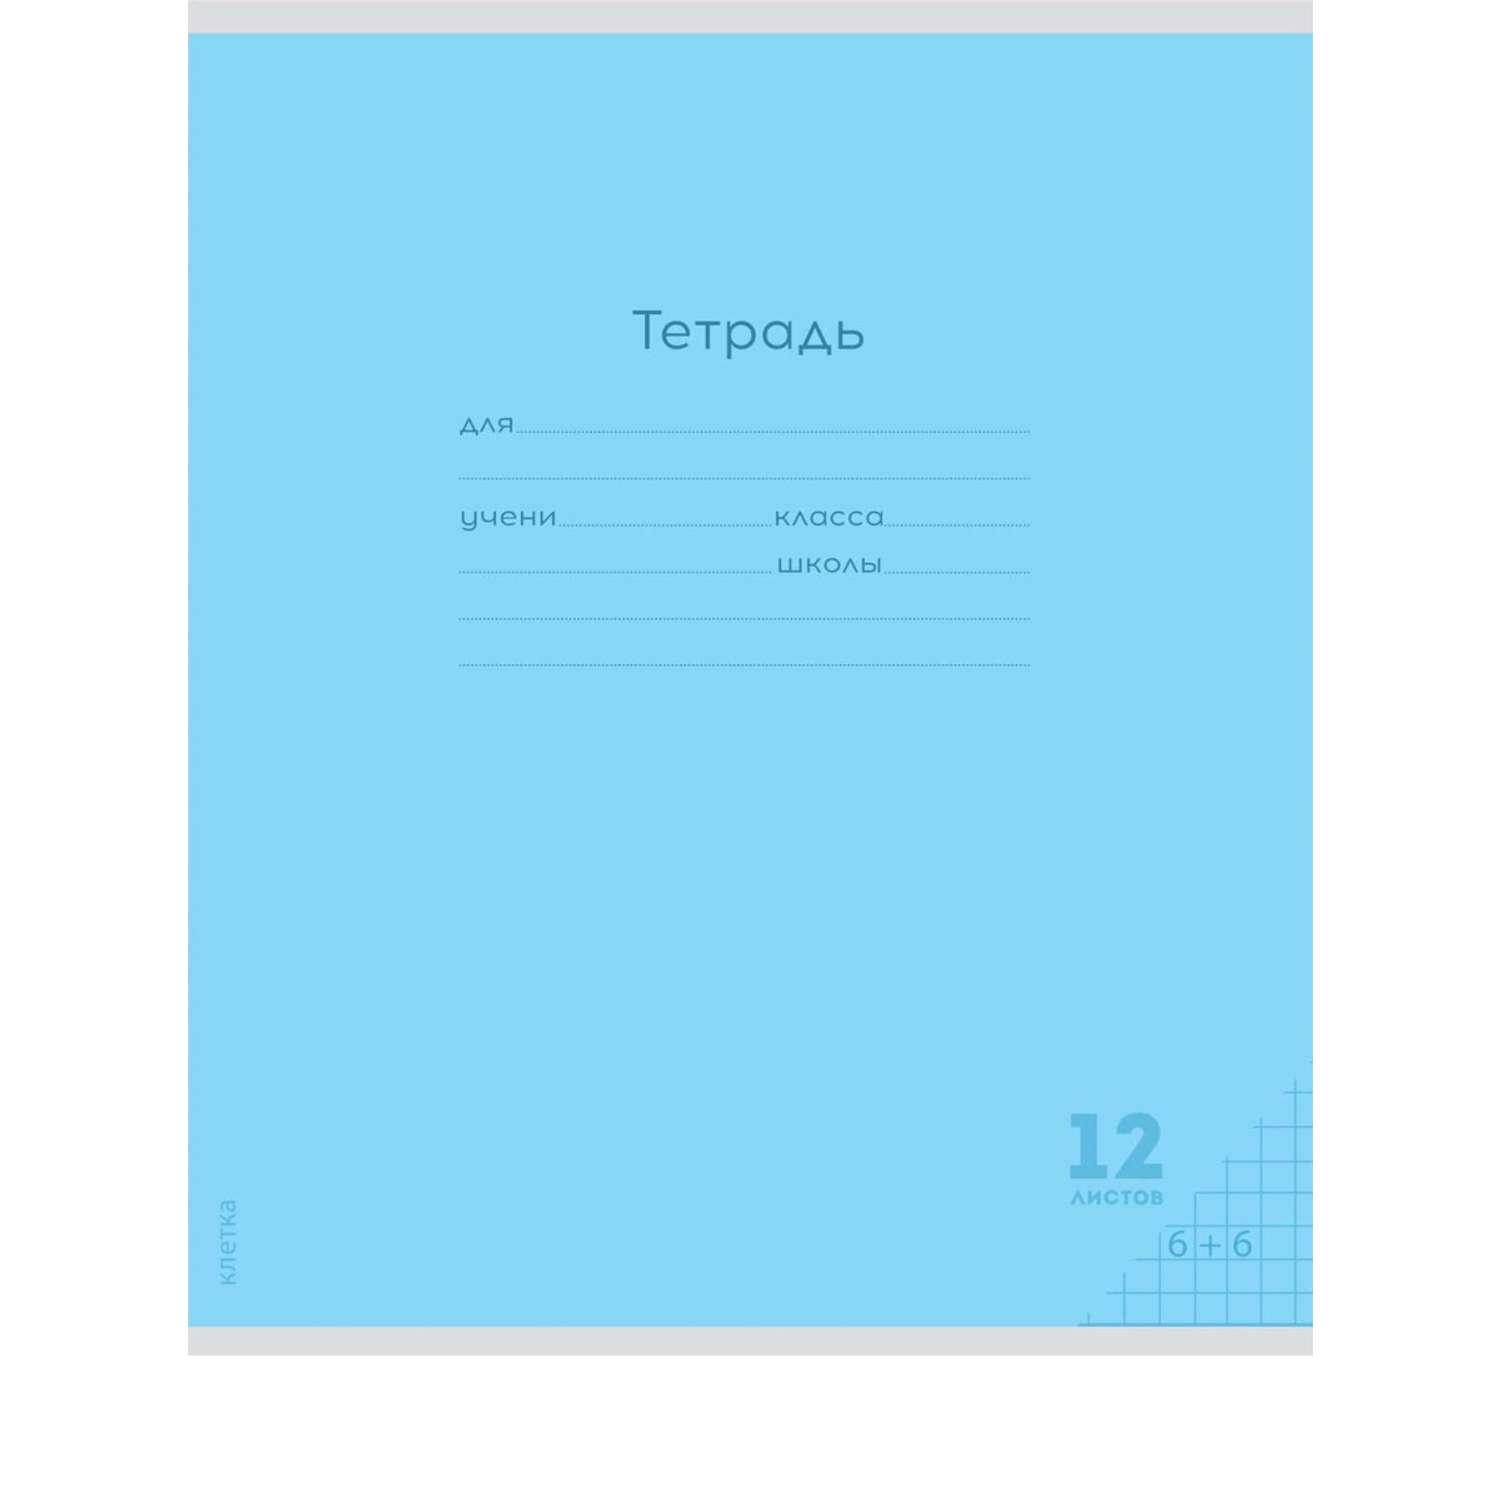 Тетради Prof Press Клетка 12л. классика цветная мелованная обложка комплект 10 штук - фото 3